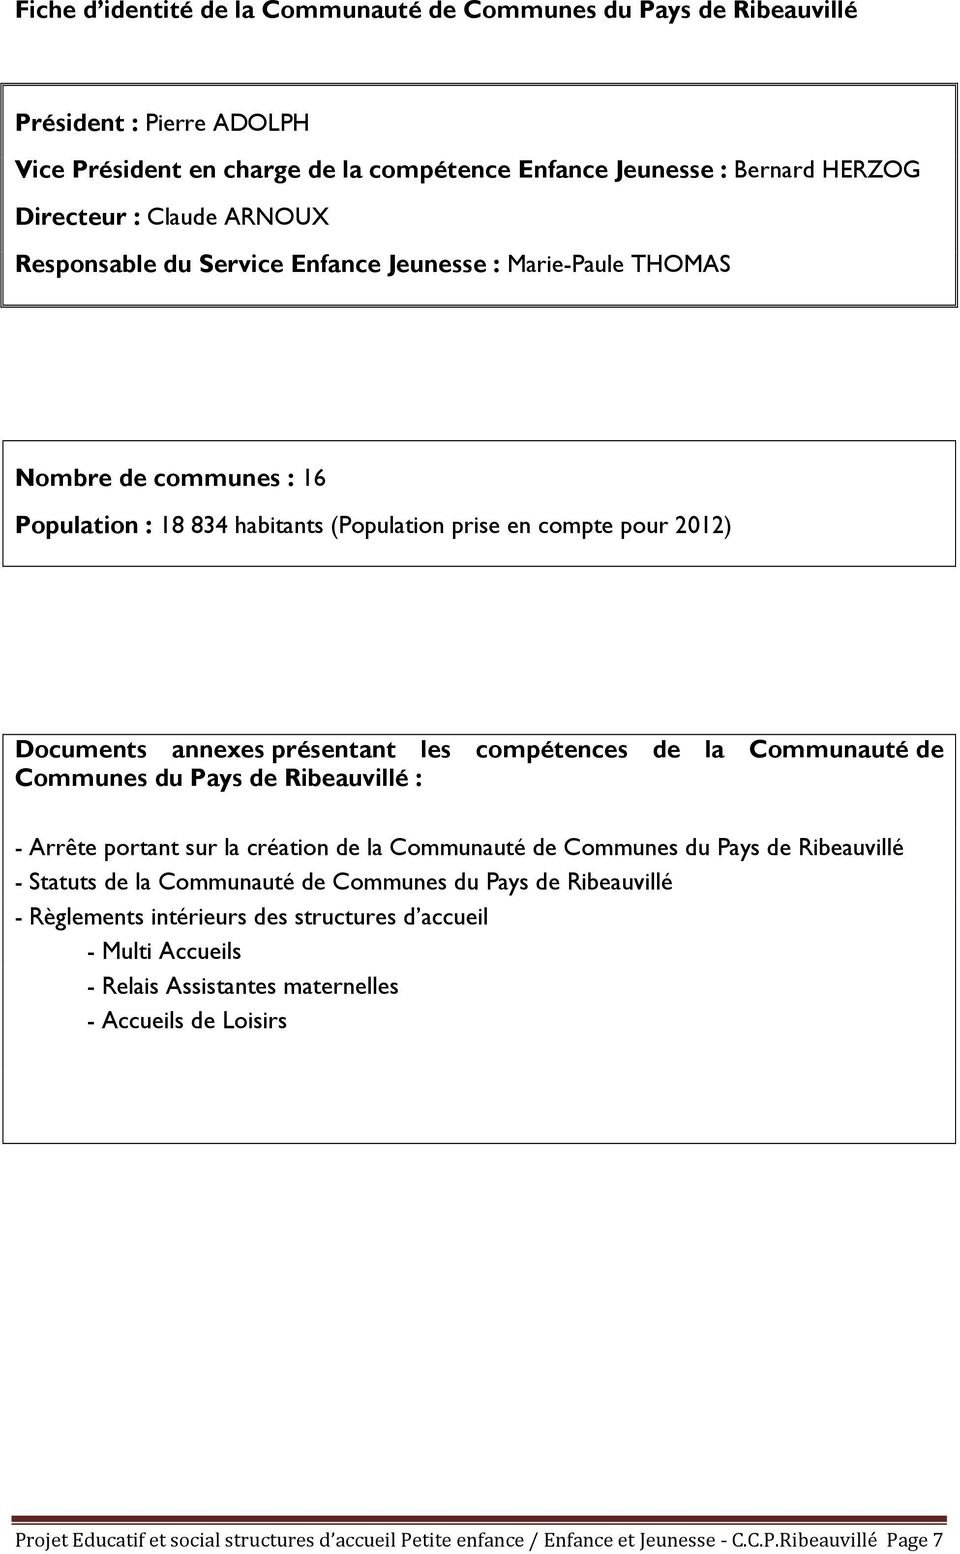 de la Communauté de Communes du Pays de Ribeauvillé : - Arrête portant sur la création de la Communauté de Communes du Pays de Ribeauvillé - Statuts de la Communauté de Communes du Pays de